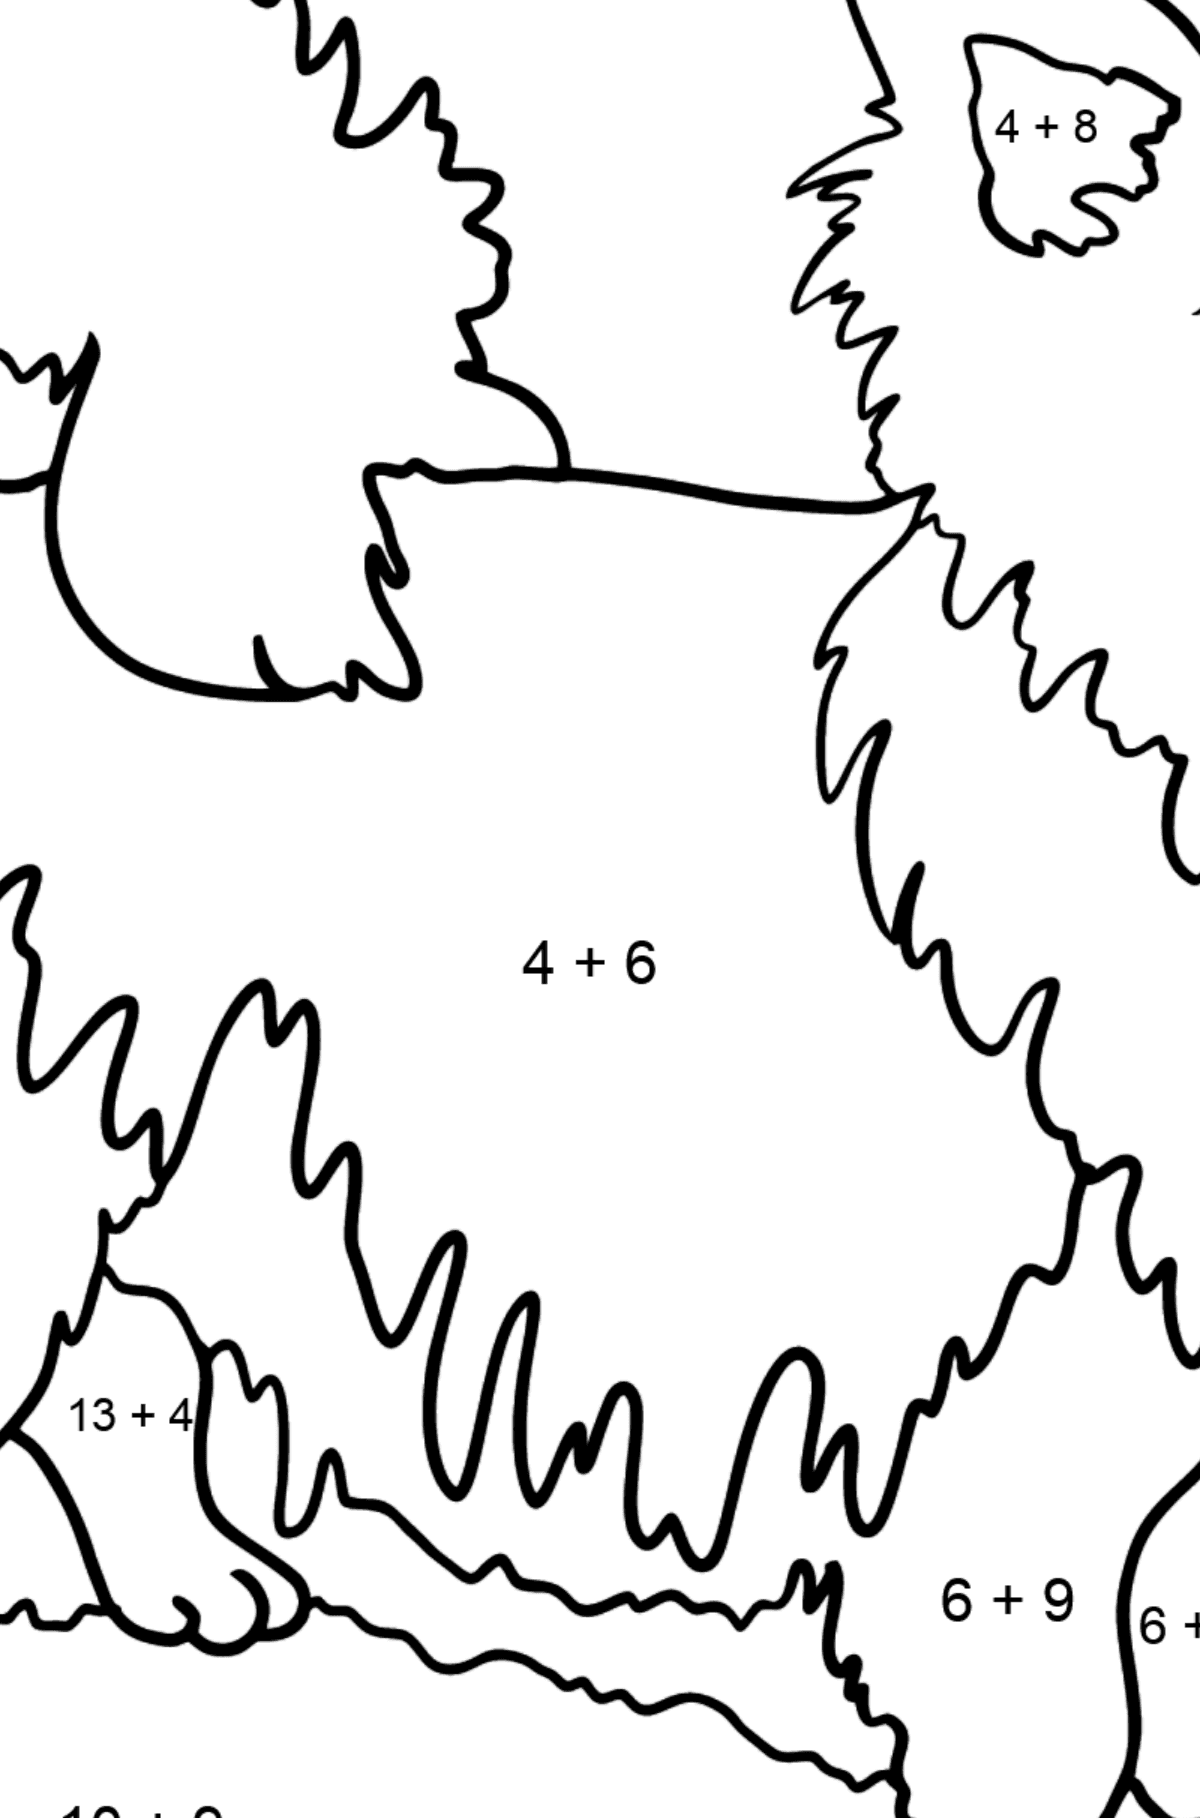 Dibujo de Chihuahua para colorear - Colorear con Matemáticas - Sumas para Niños